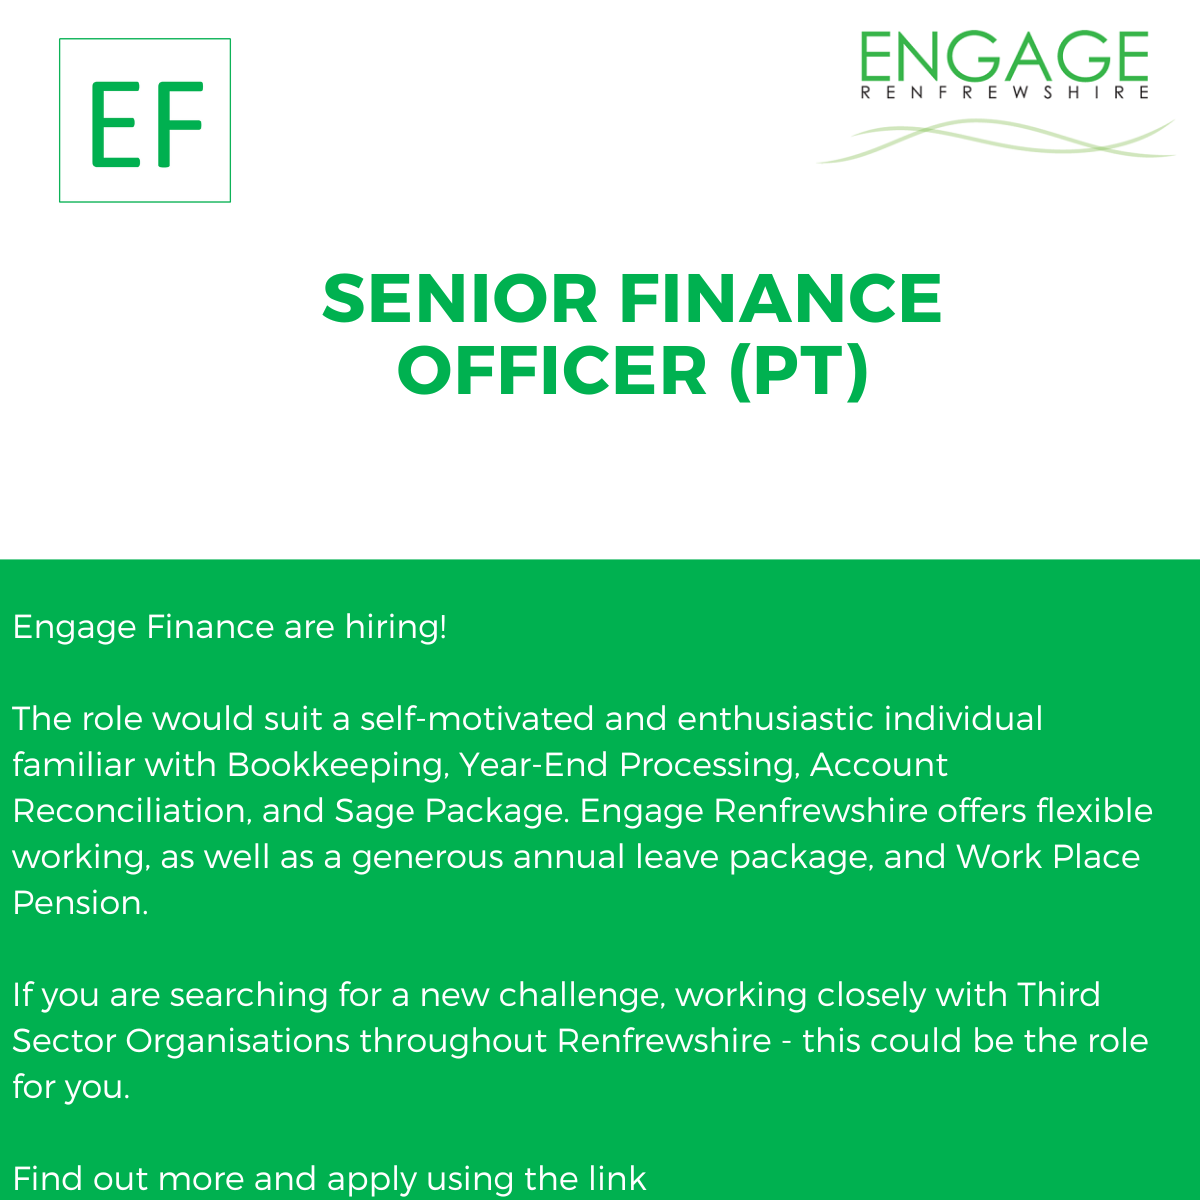 We are hiring - Senior Finance Officer